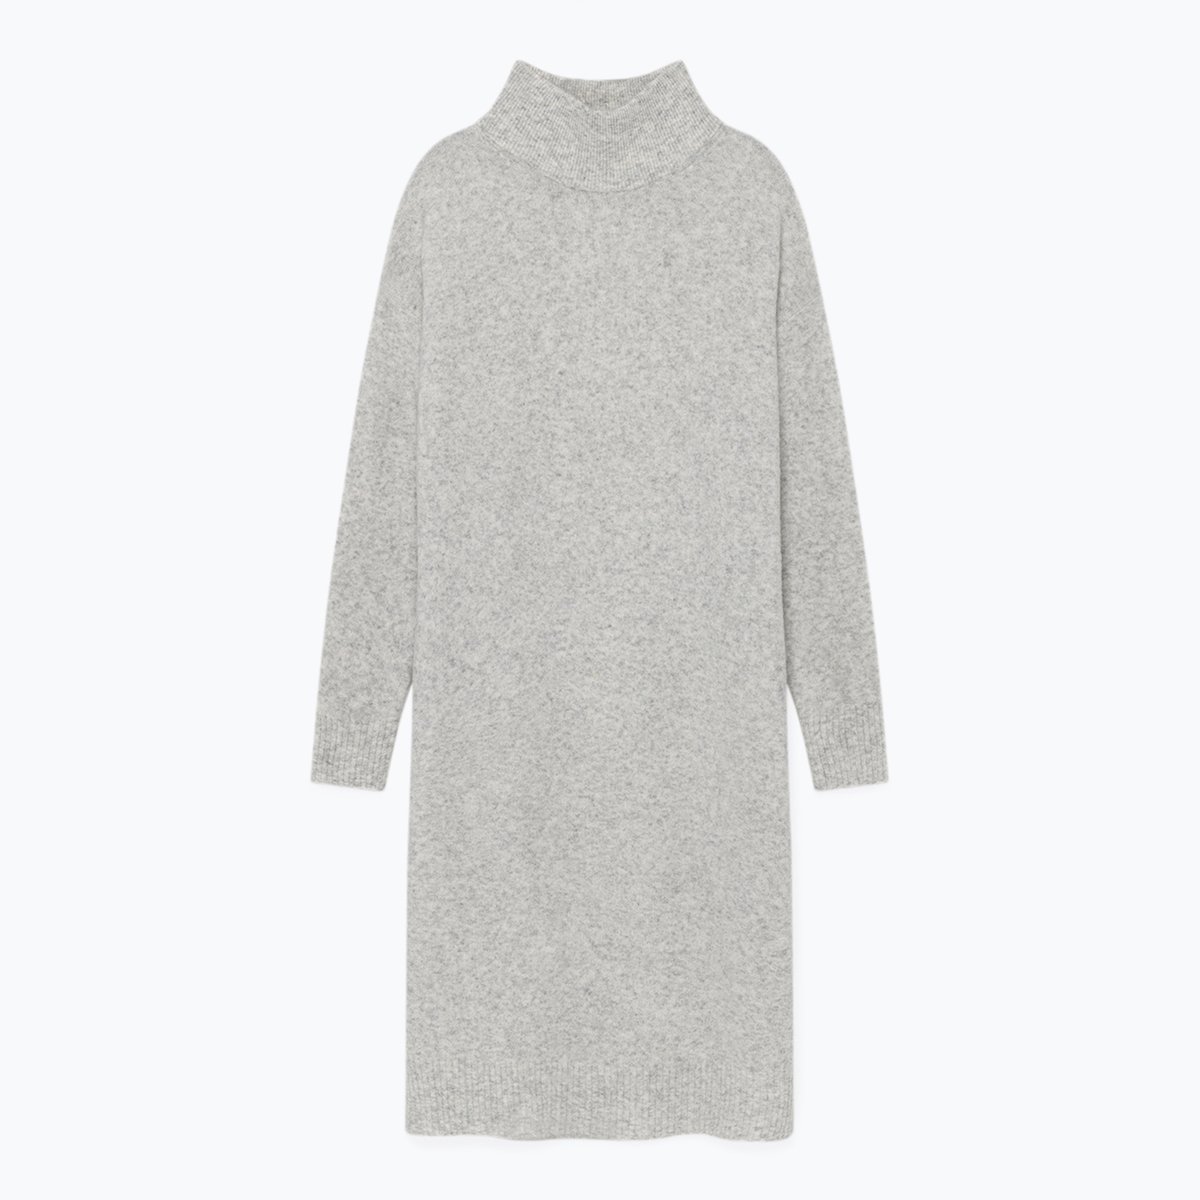 Платье-пуловер La Redoute Длинное с длинными рукавами DAMSVILLE XS/S серый, размер XS/S Длинное с длинными рукавами DAMSVILLE XS/S серый - фото 5